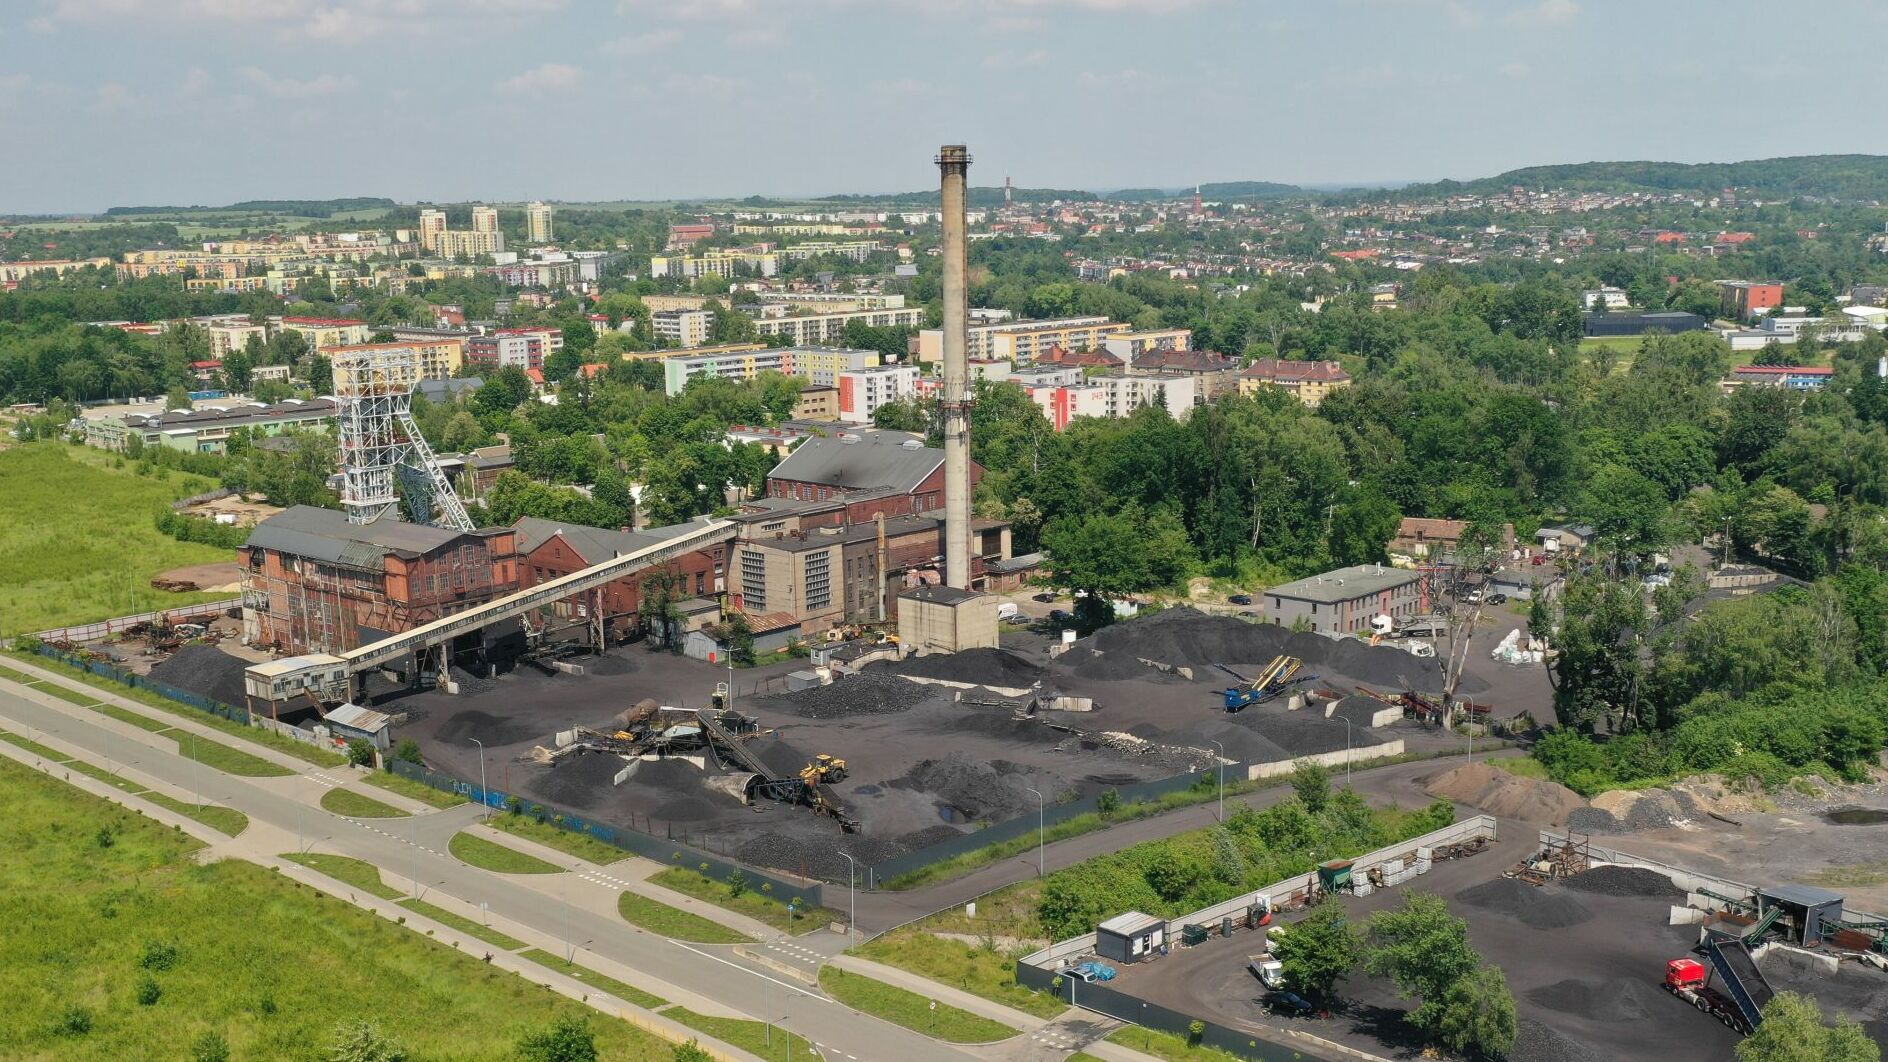 Powstańców Śląskich Coal Mine